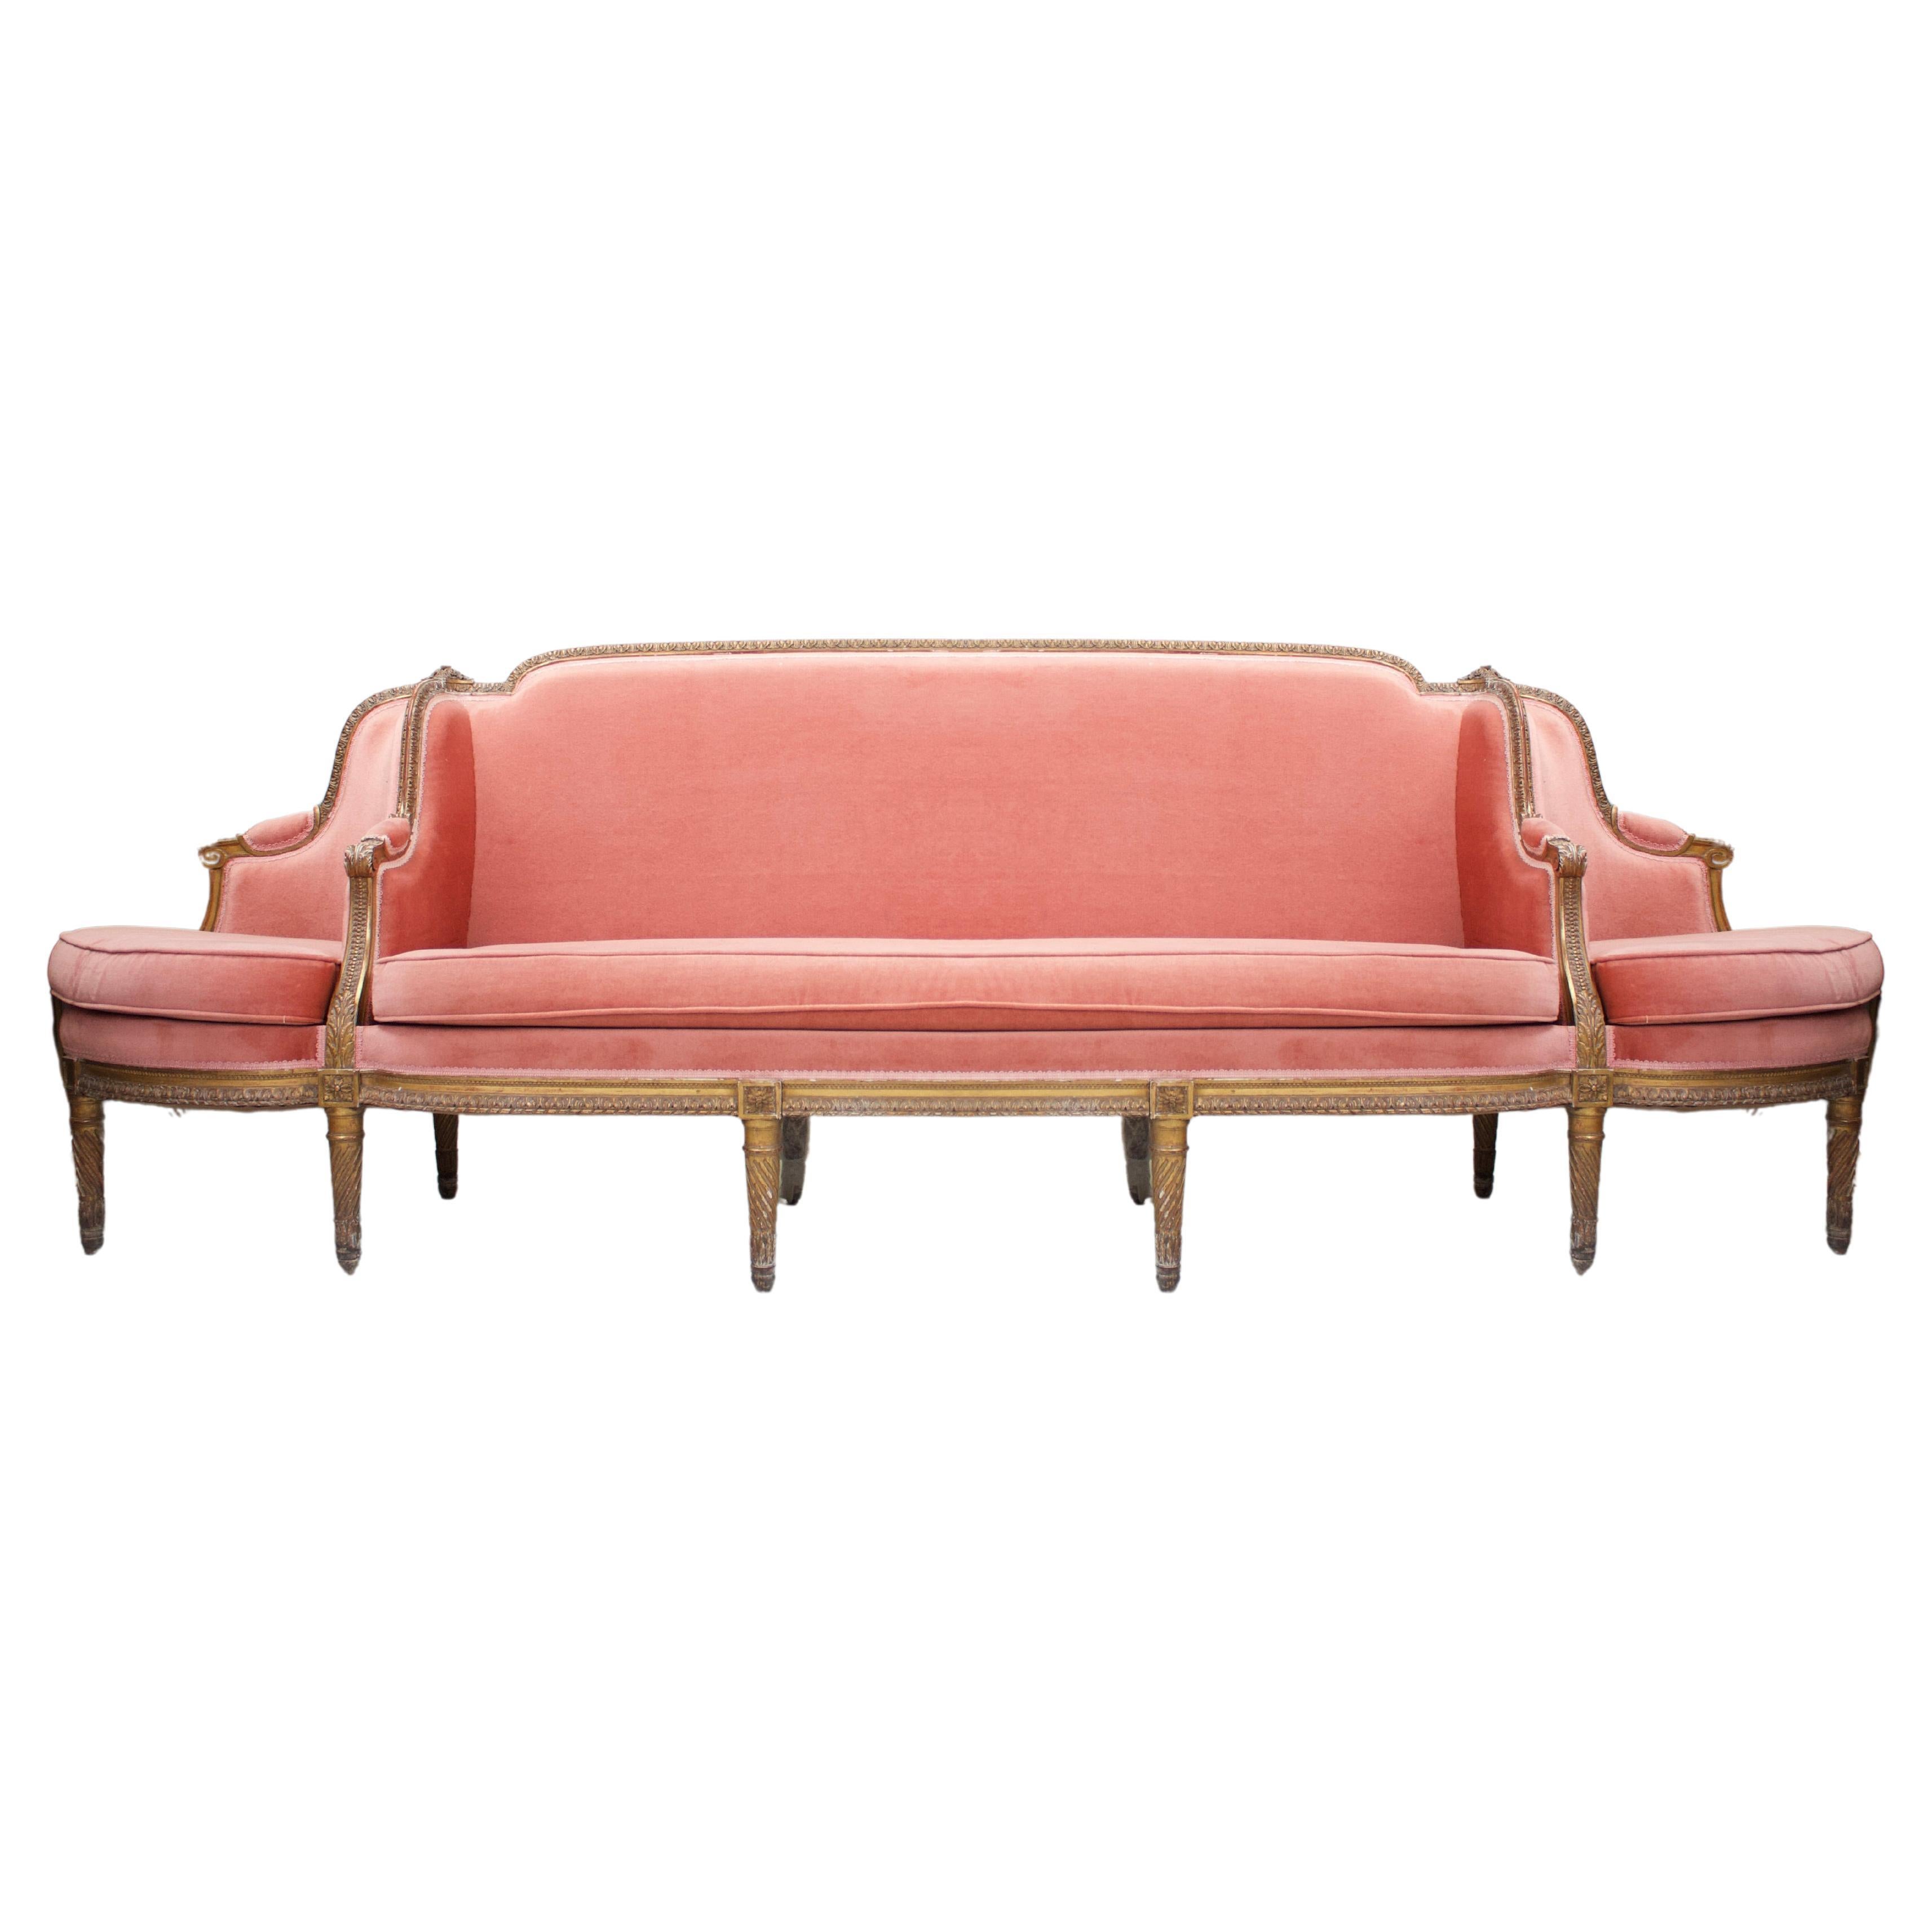 Large Conversation Settee - Canapé à confident - Sofa For Sale